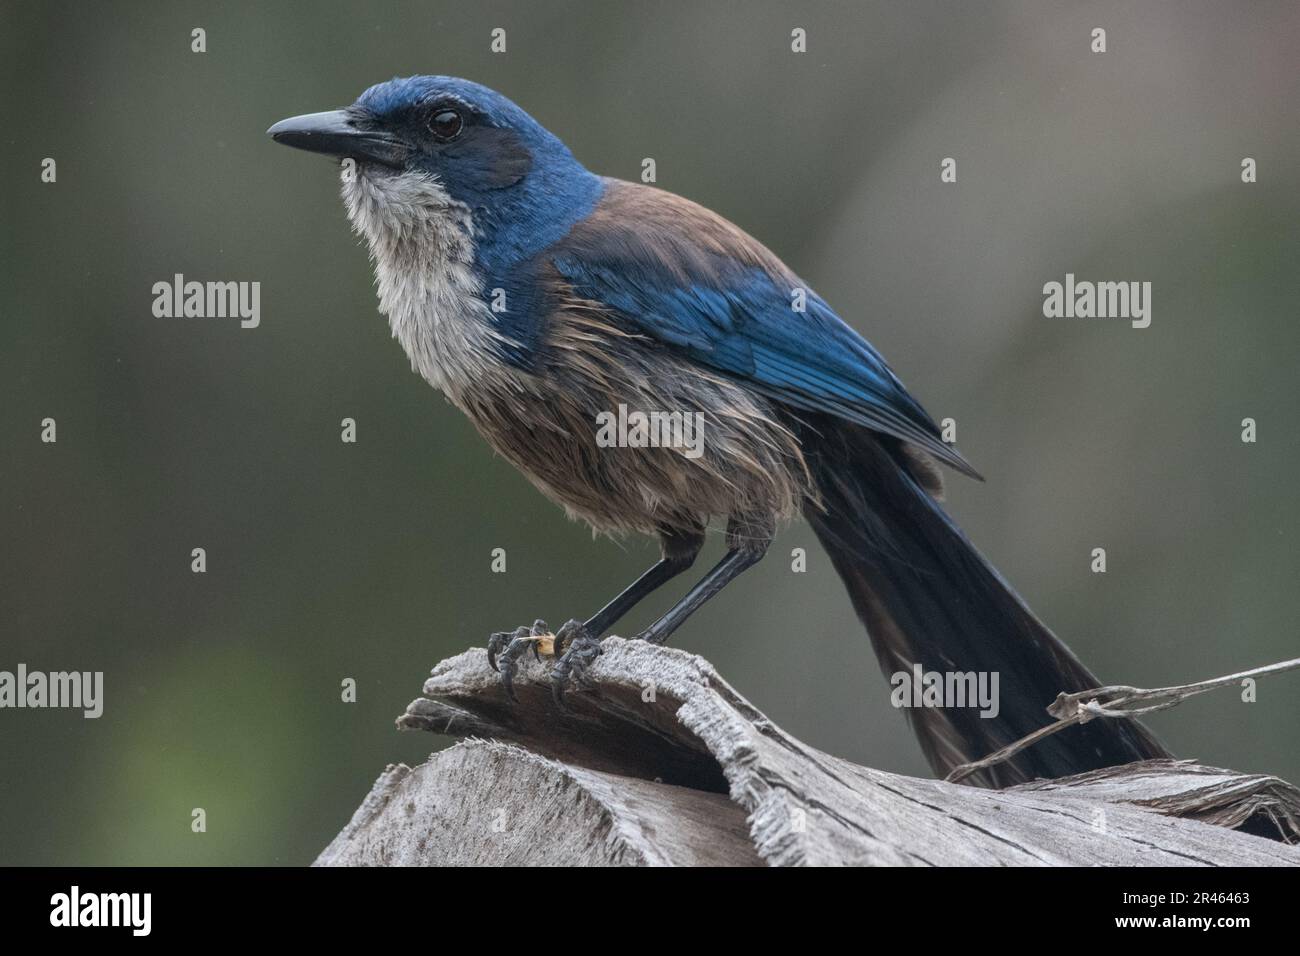 Island Scrub jay, Aphelocoma insularis, une espèce d'oiseau corvid endémique de l'île Santa Cruz dans le parc national des îles Anglo-Normandes en Californie. Banque D'Images